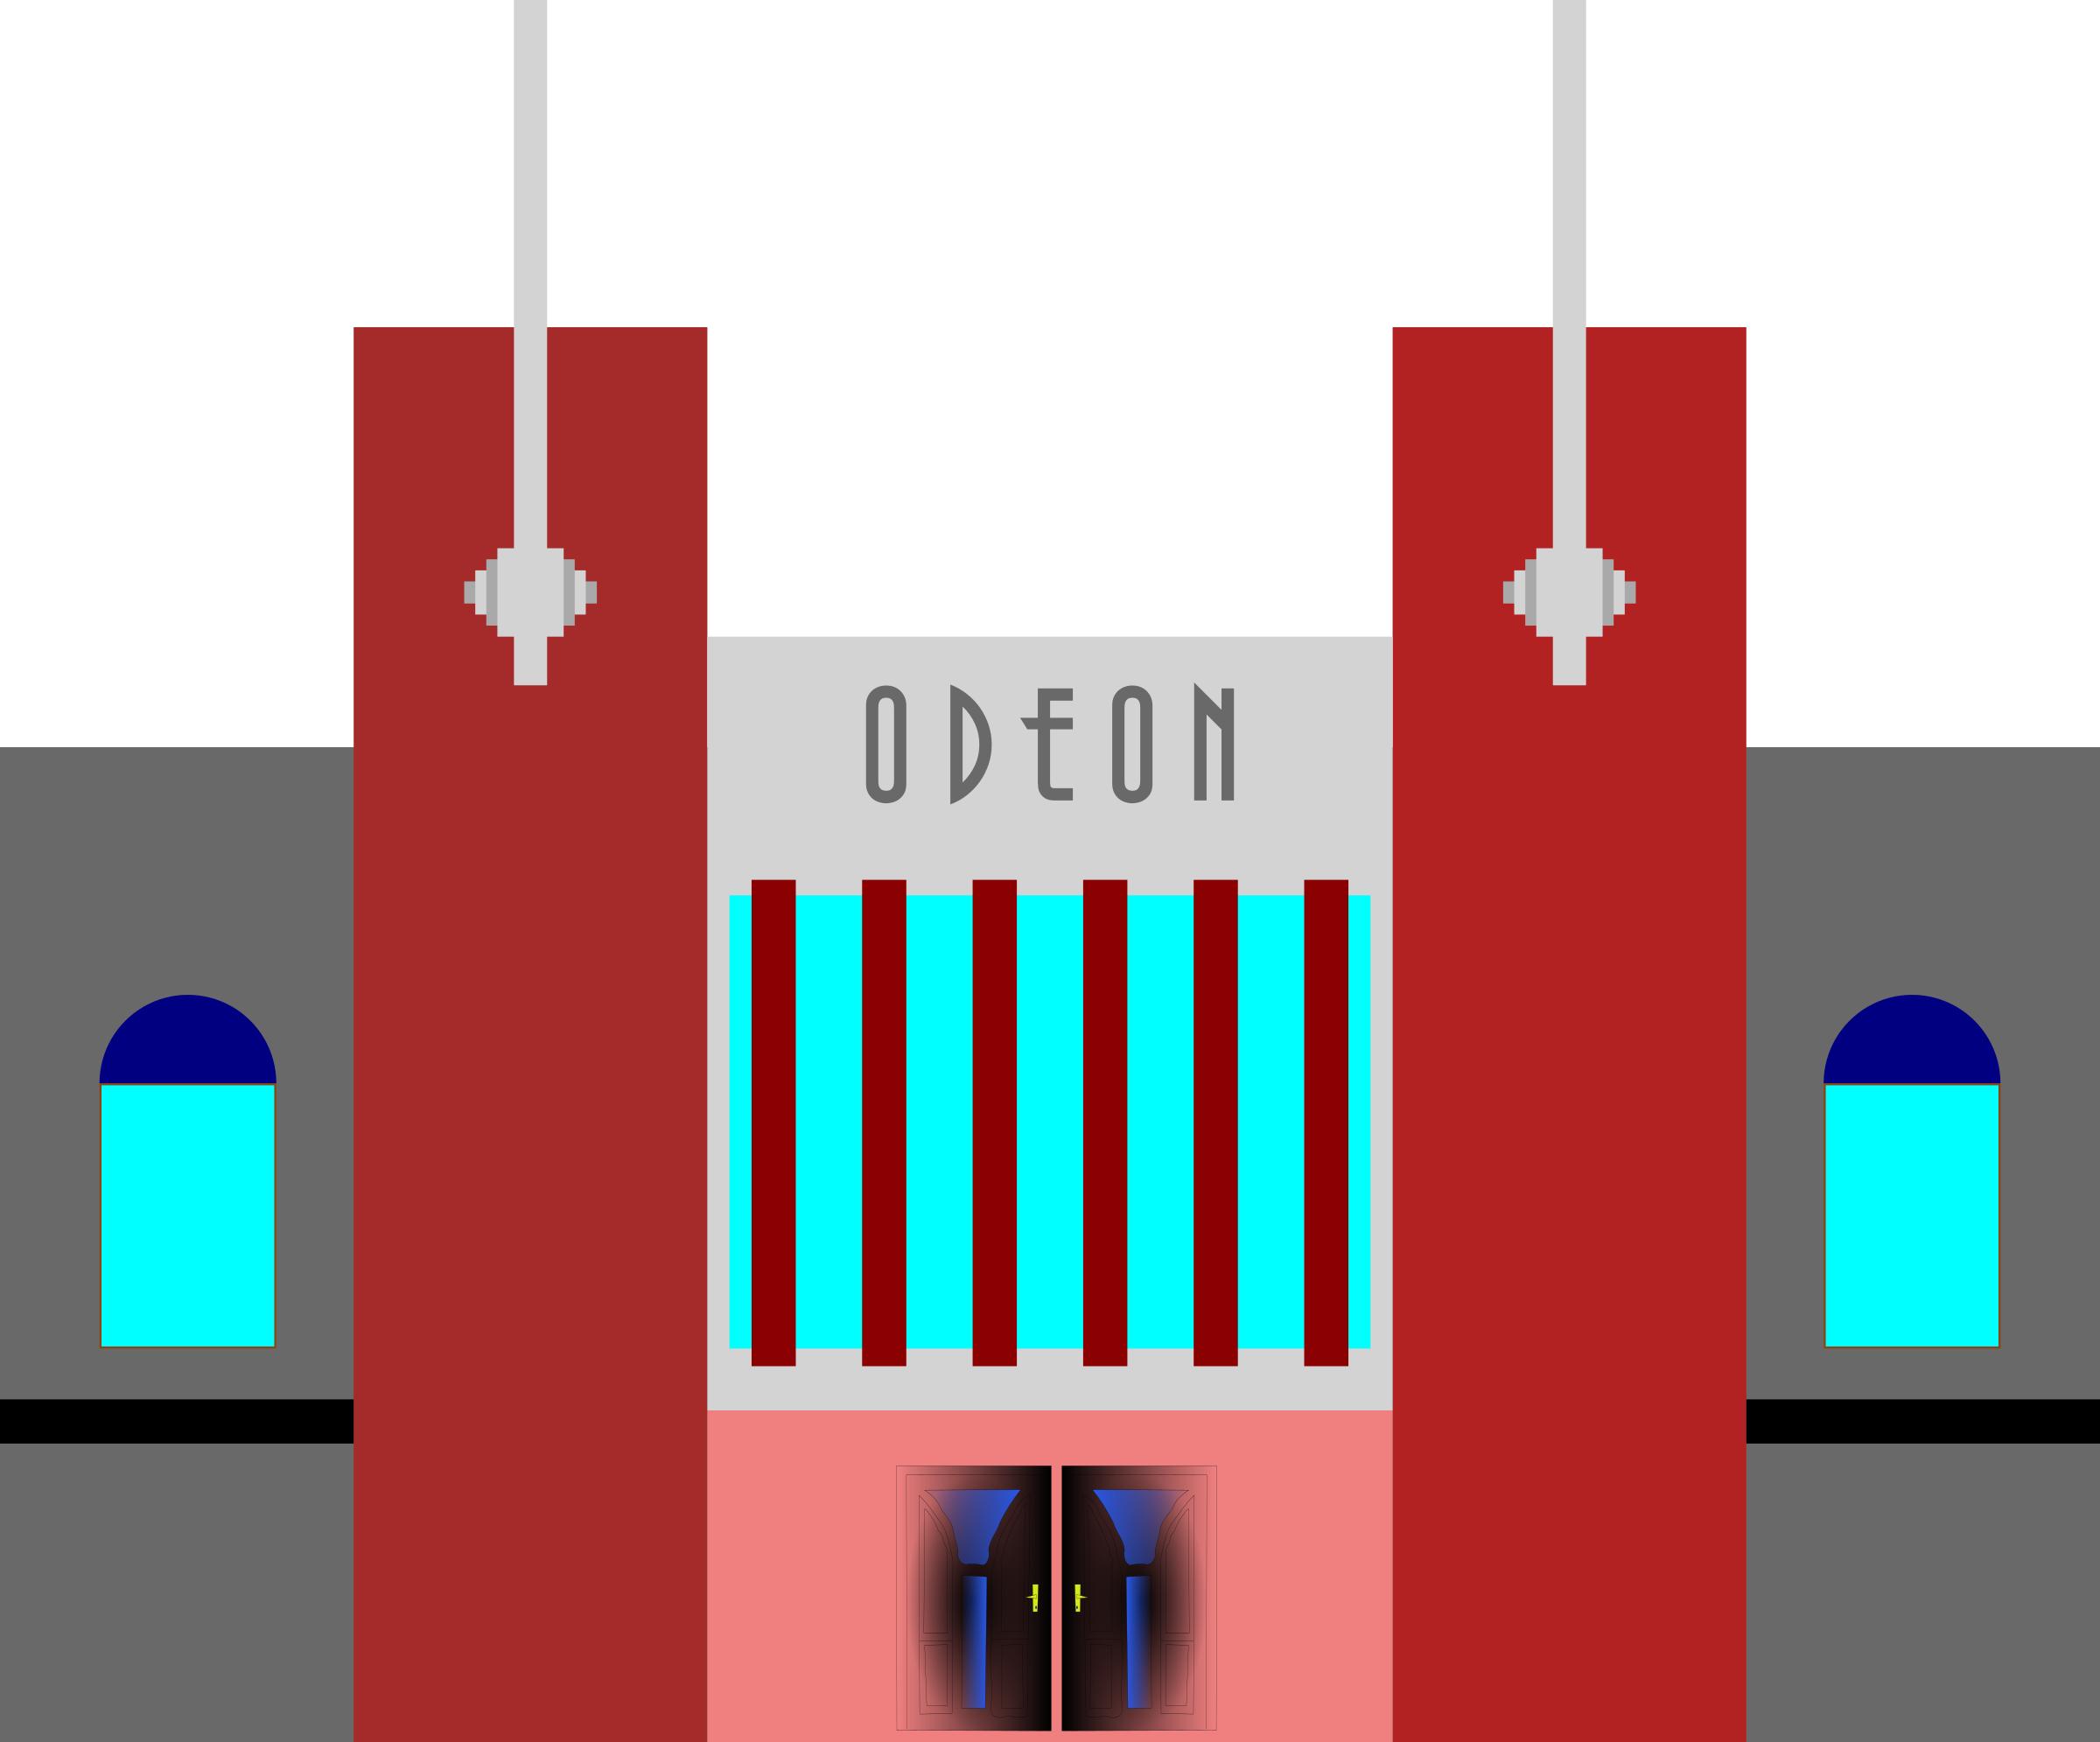 Art Deco Odeon Cinema icons